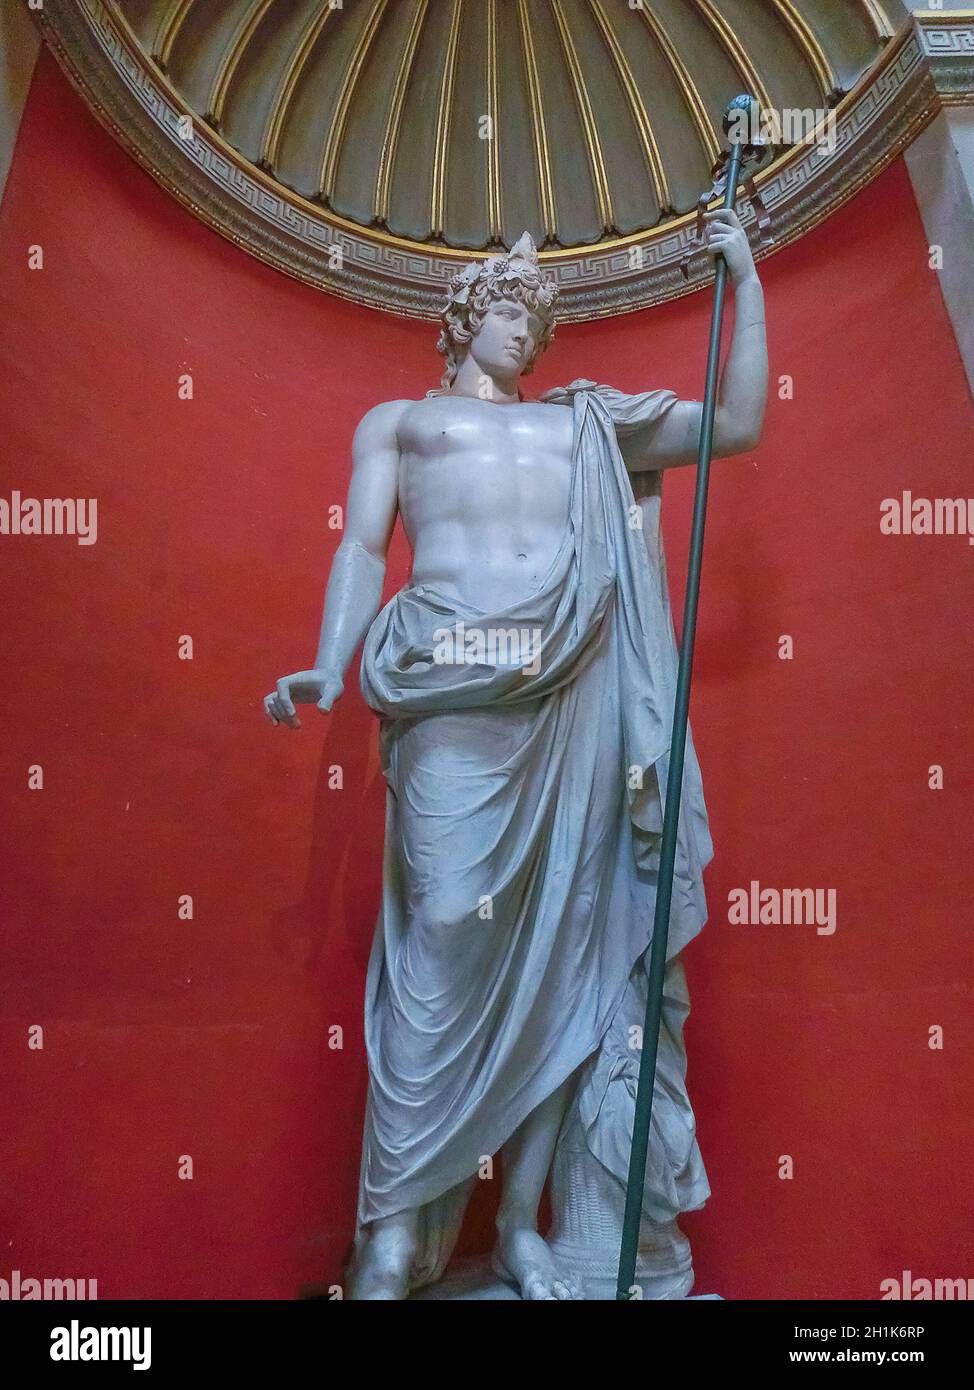 Cité du Vatican, Italie - 02 mai 2014 : sculpture grecque classique au Musée du Vatican à la Cité du Vatican, Italie, le 02 mai 2014 Banque D'Images